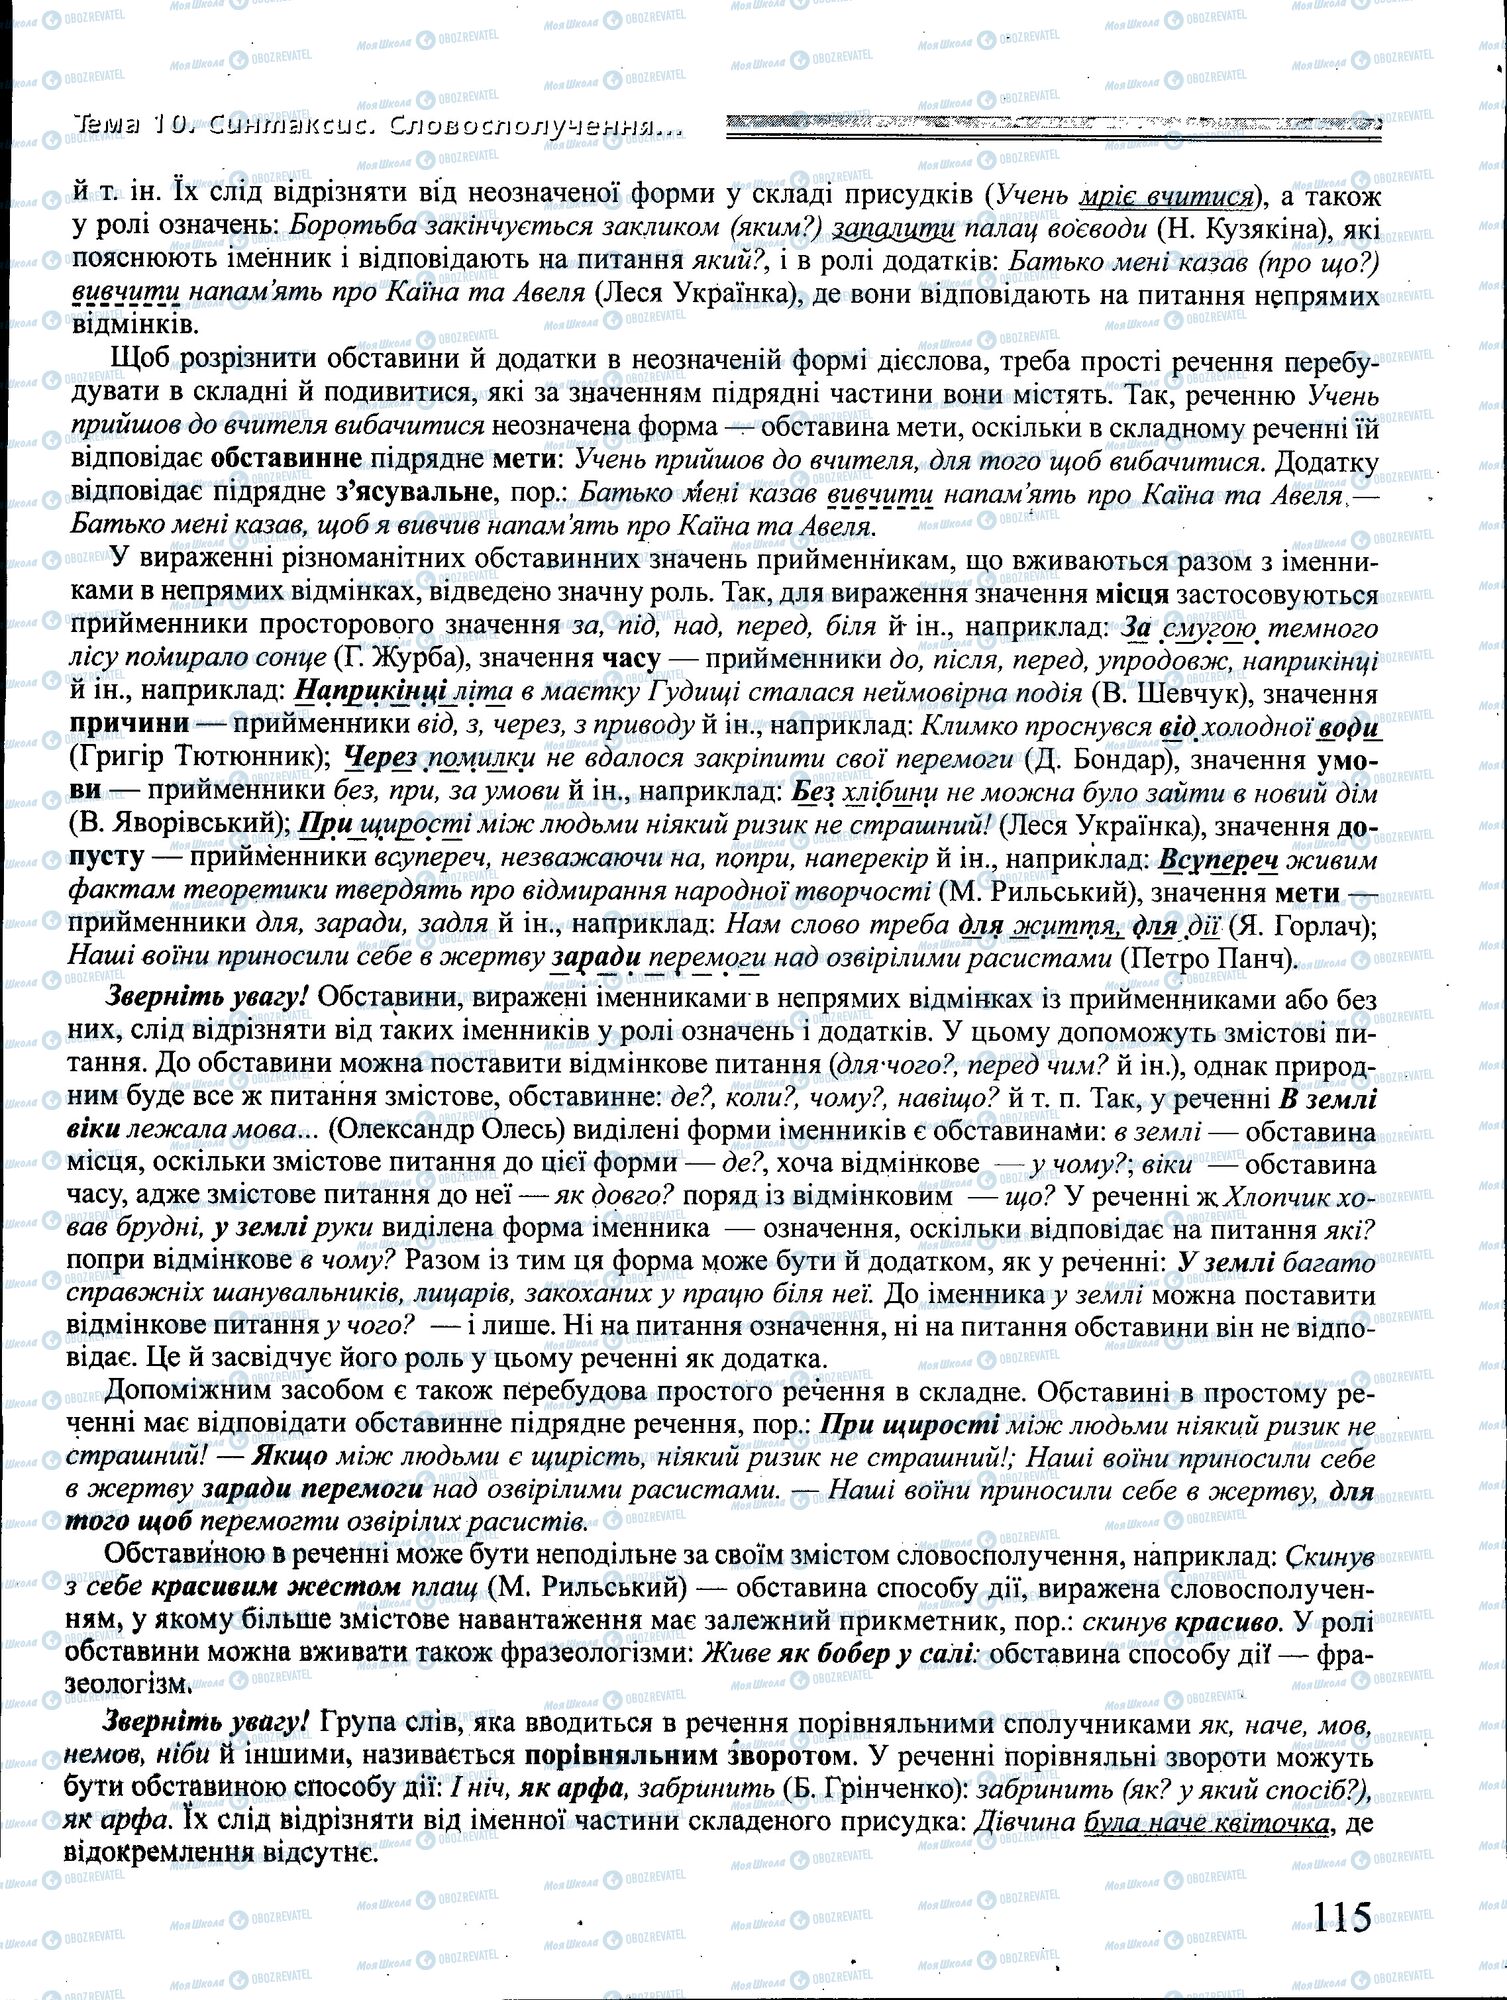 ДПА Укр мова 4 класс страница 115